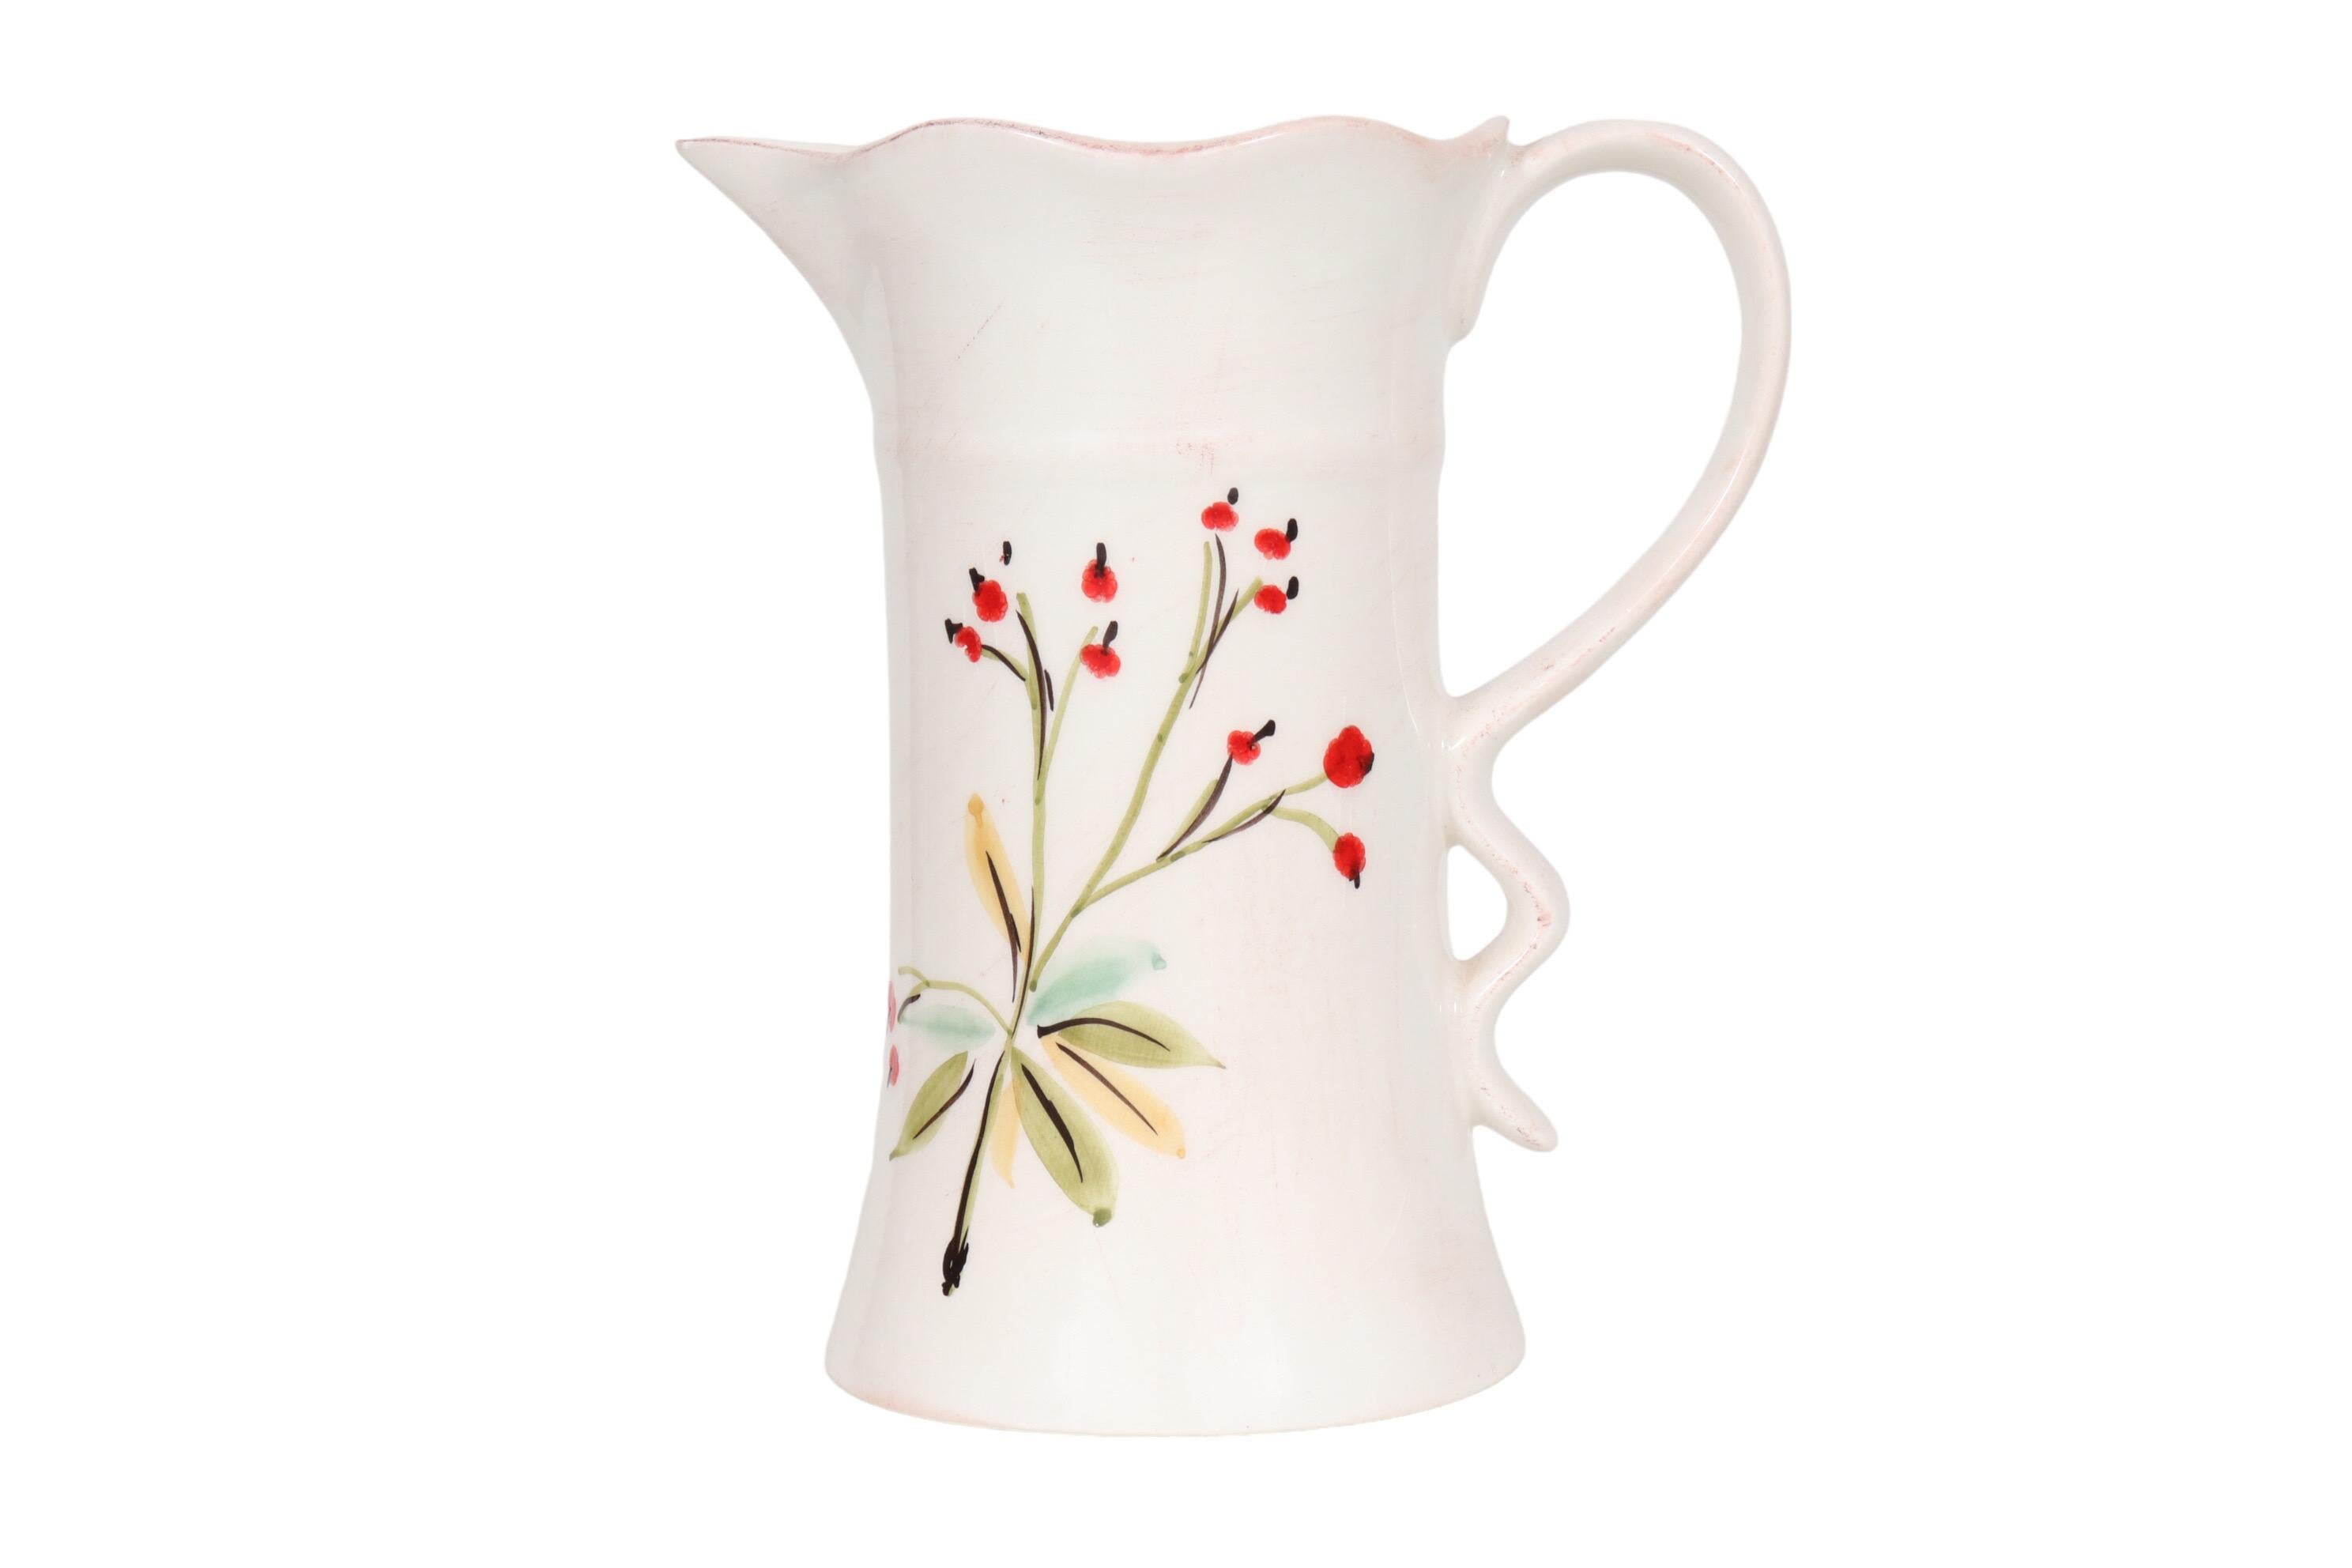 Ein italienischer Keramikkrug der Firma Tiriduzzi. Handbemalt mit einem einfachen Blumenstrauß aus roten Mohnblumen auf weißem Hintergrund. Die Lippe ist leicht gekräuselt, diese Welle spiegelt sich in der Basis des Schlaufengriffs wider. Darunter